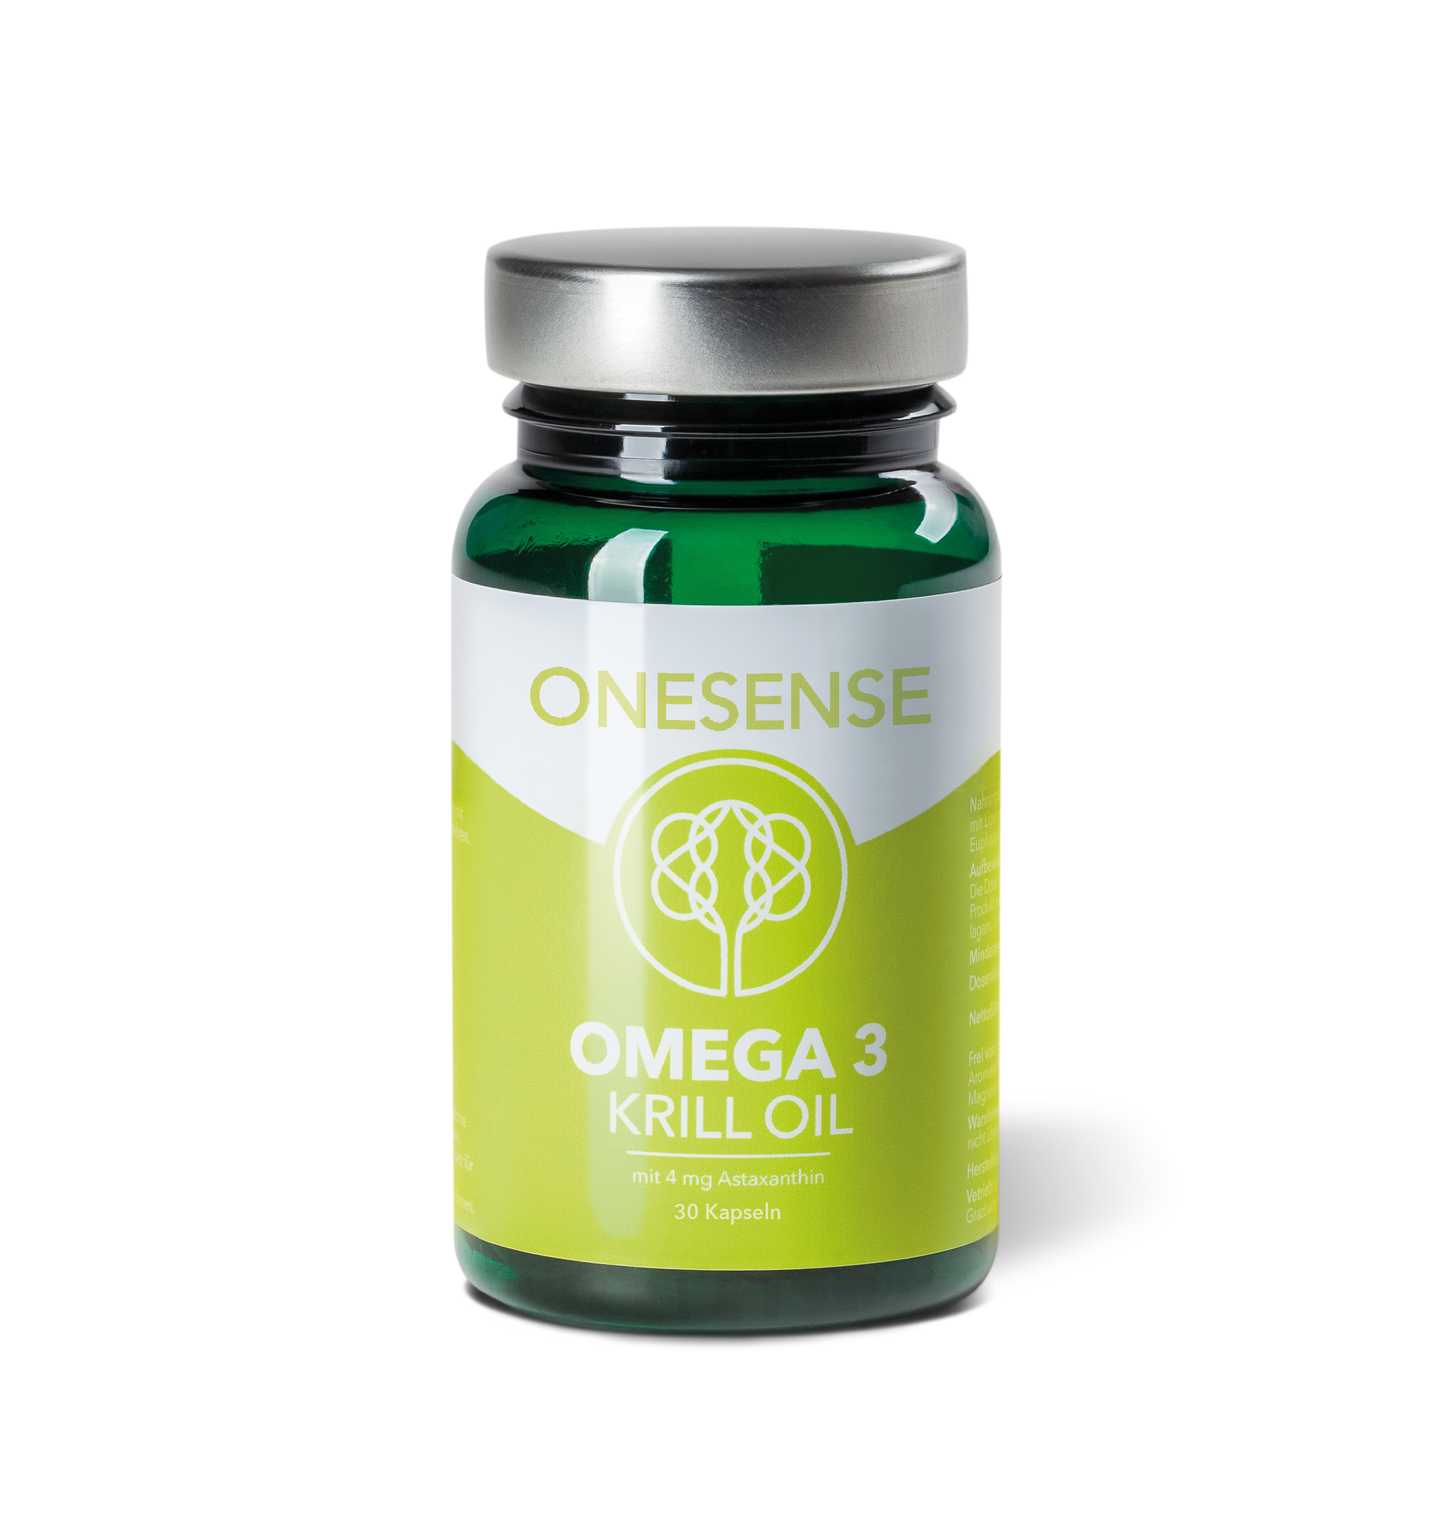 AUTUMN OFFER! Omega 3 Krill Oil 30 capsules